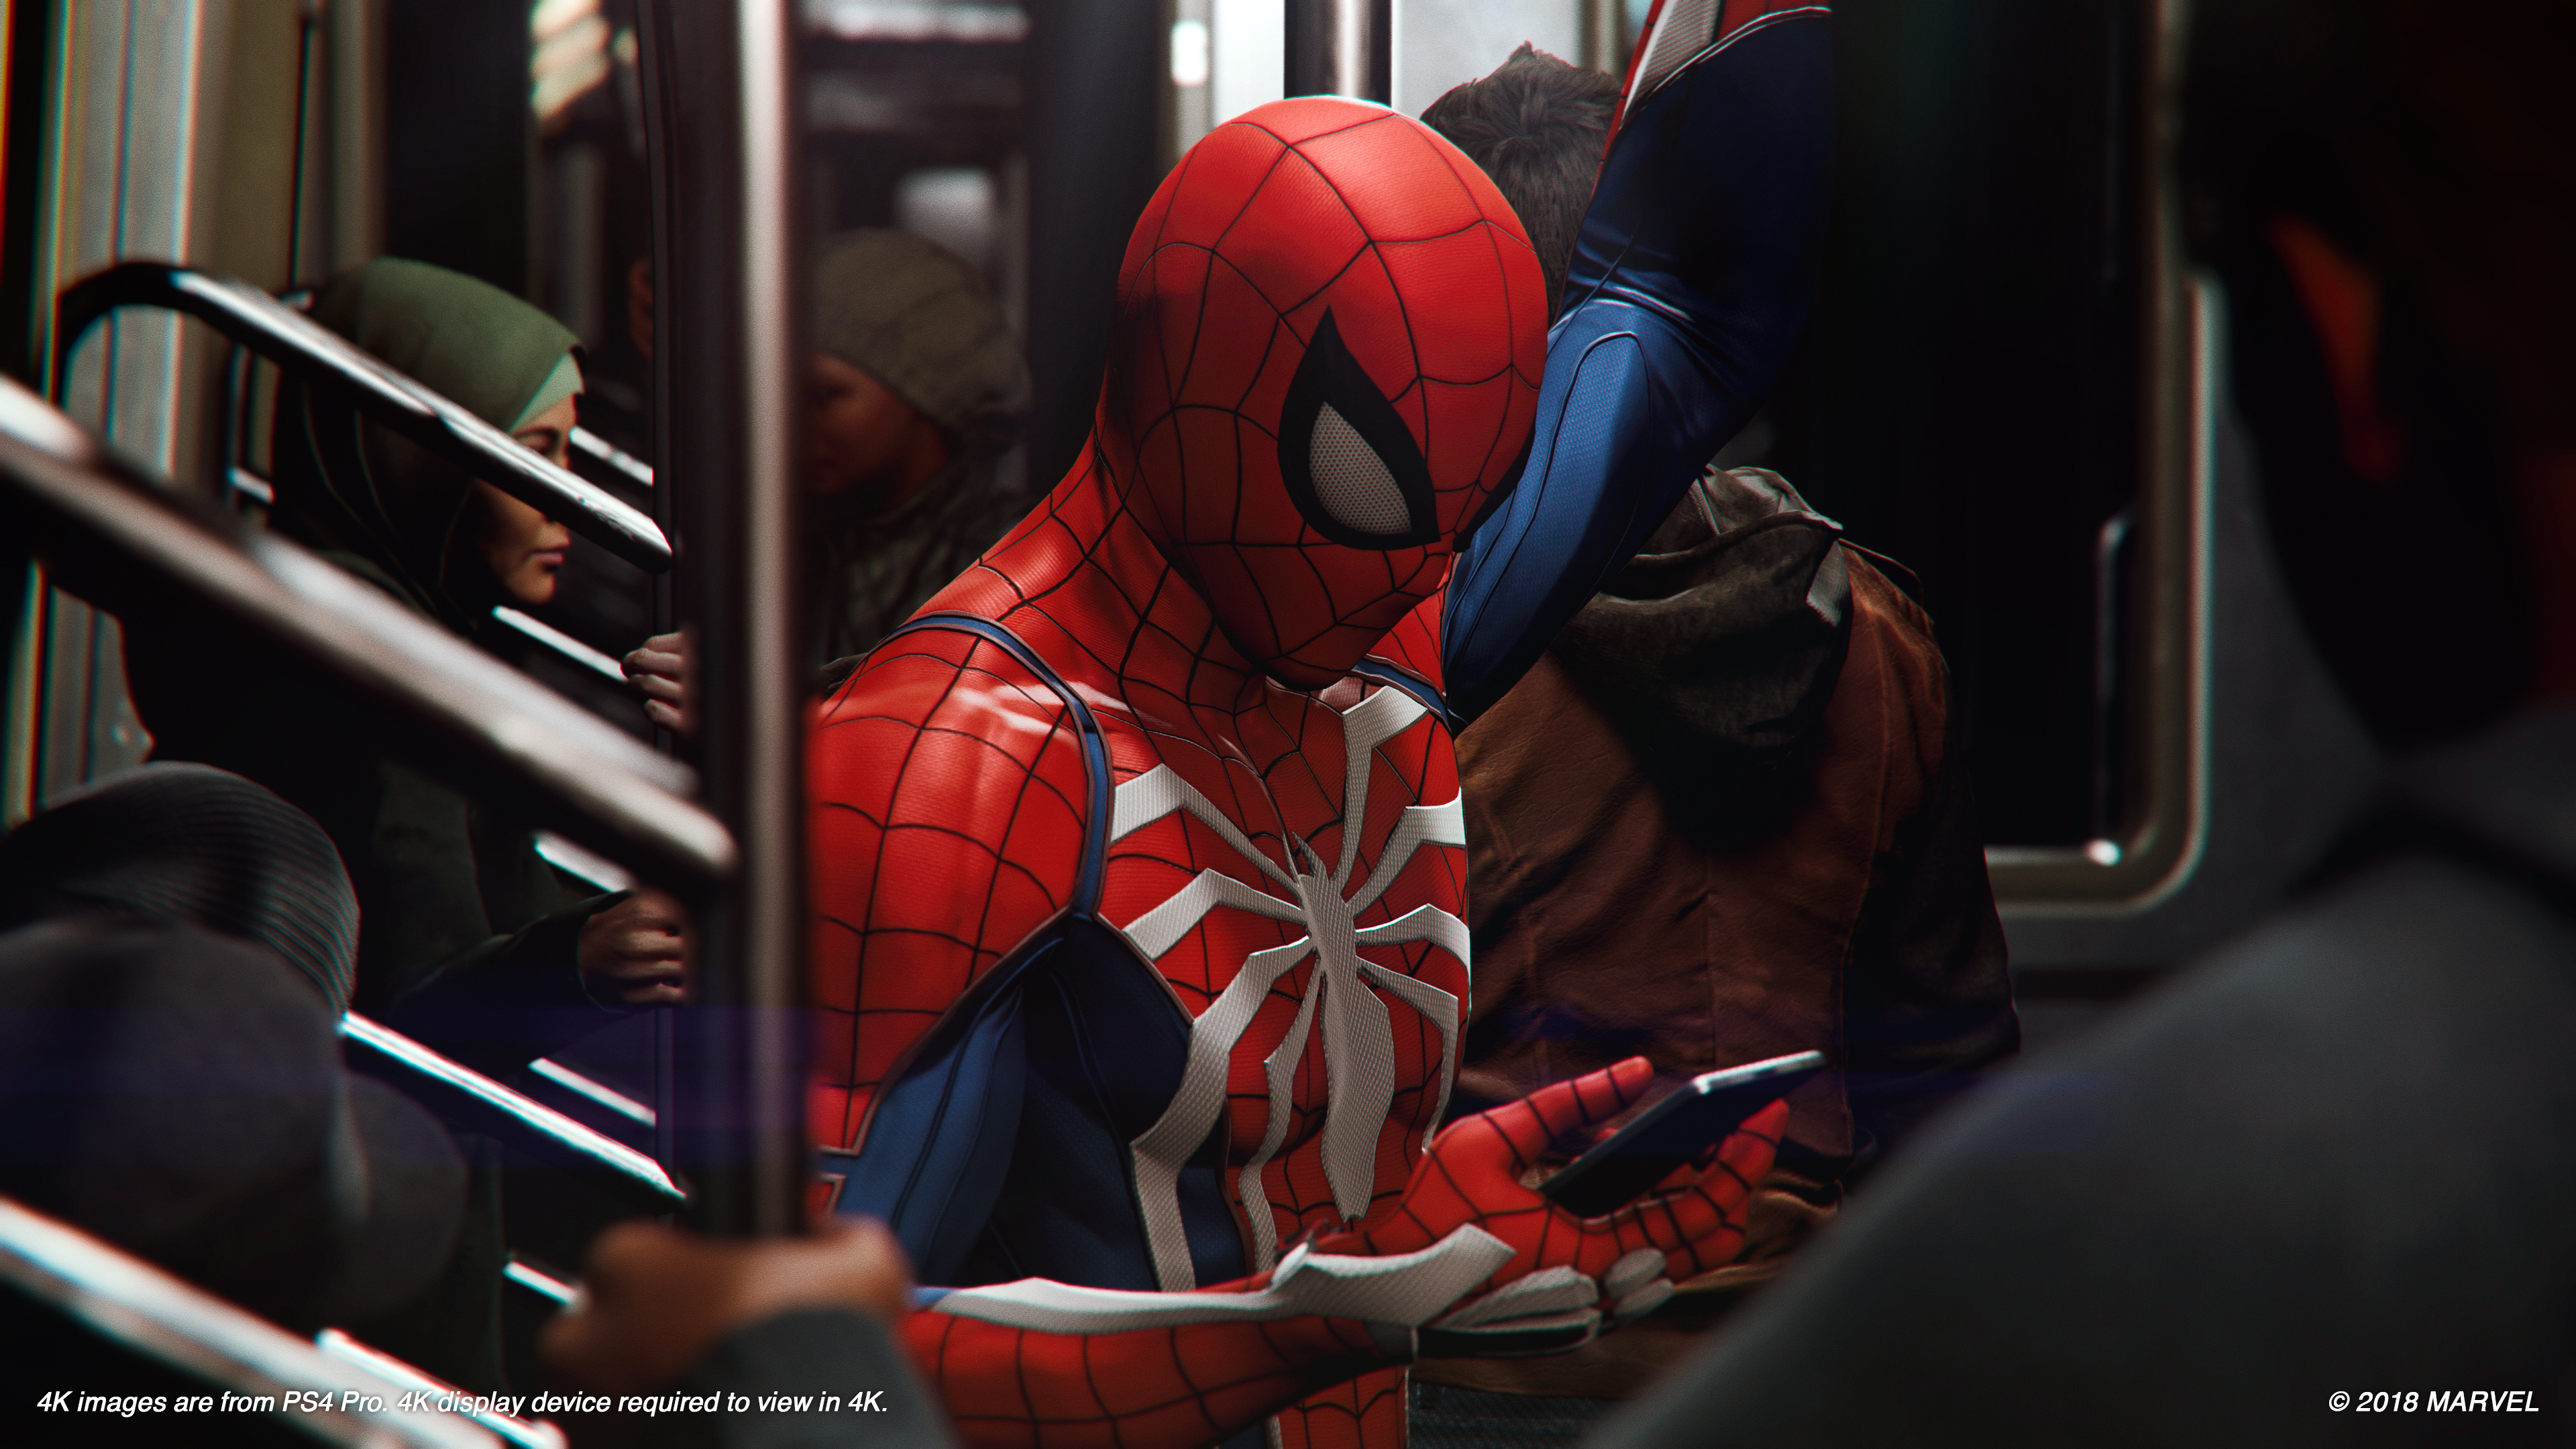 Marvel's Spider-Man PS4